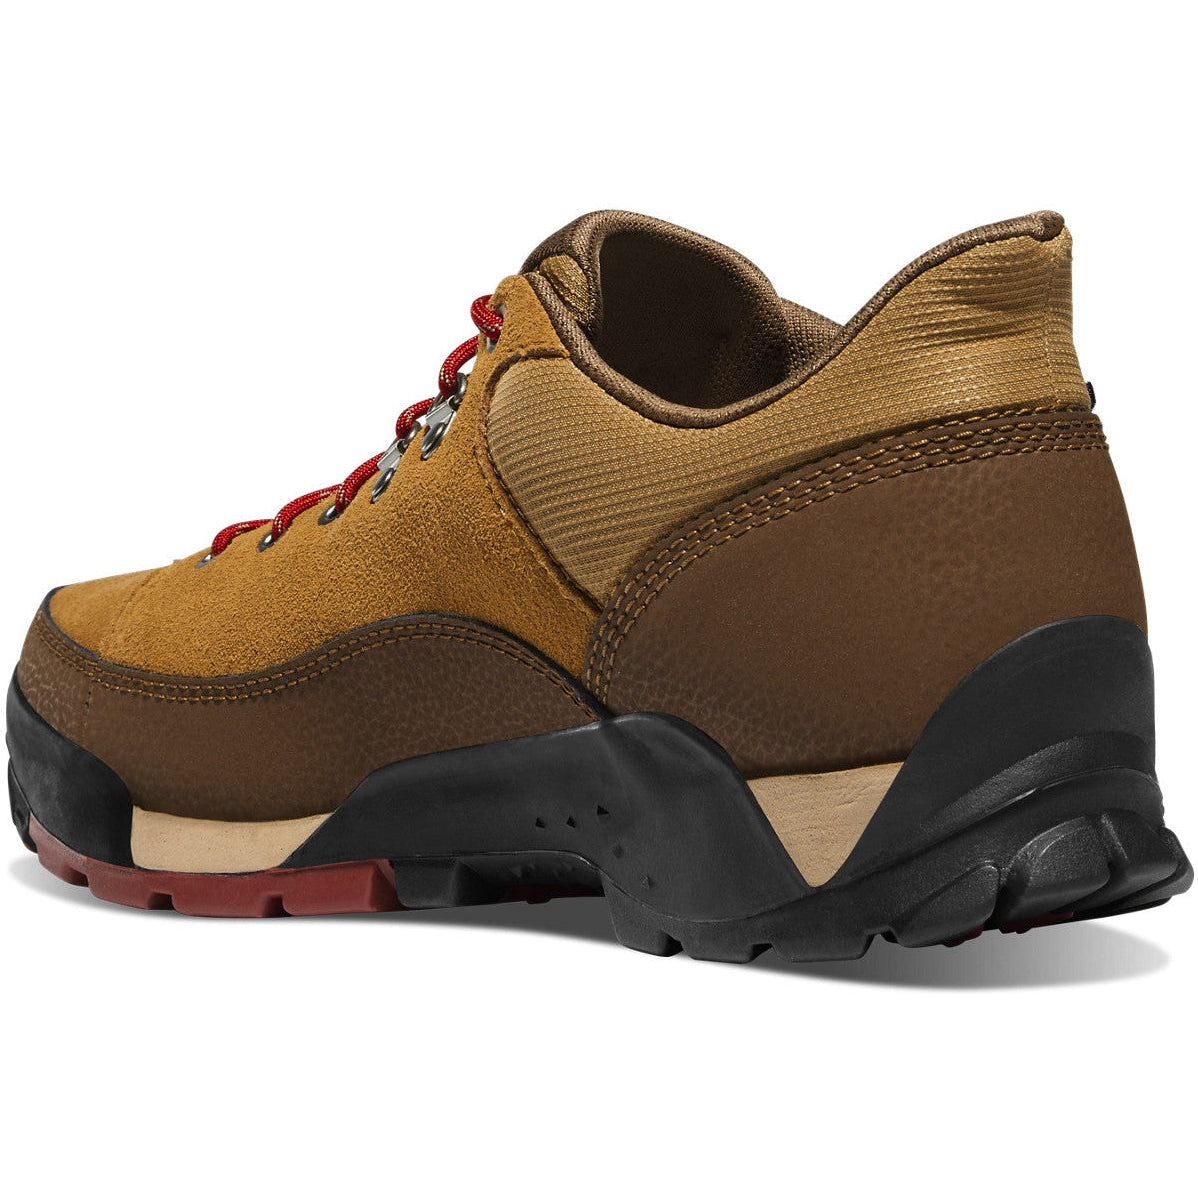 Danner Men's Panorama Low 4" Waterproof Hiking Shoe - Brown/Red - 63470  - Overlook Boots